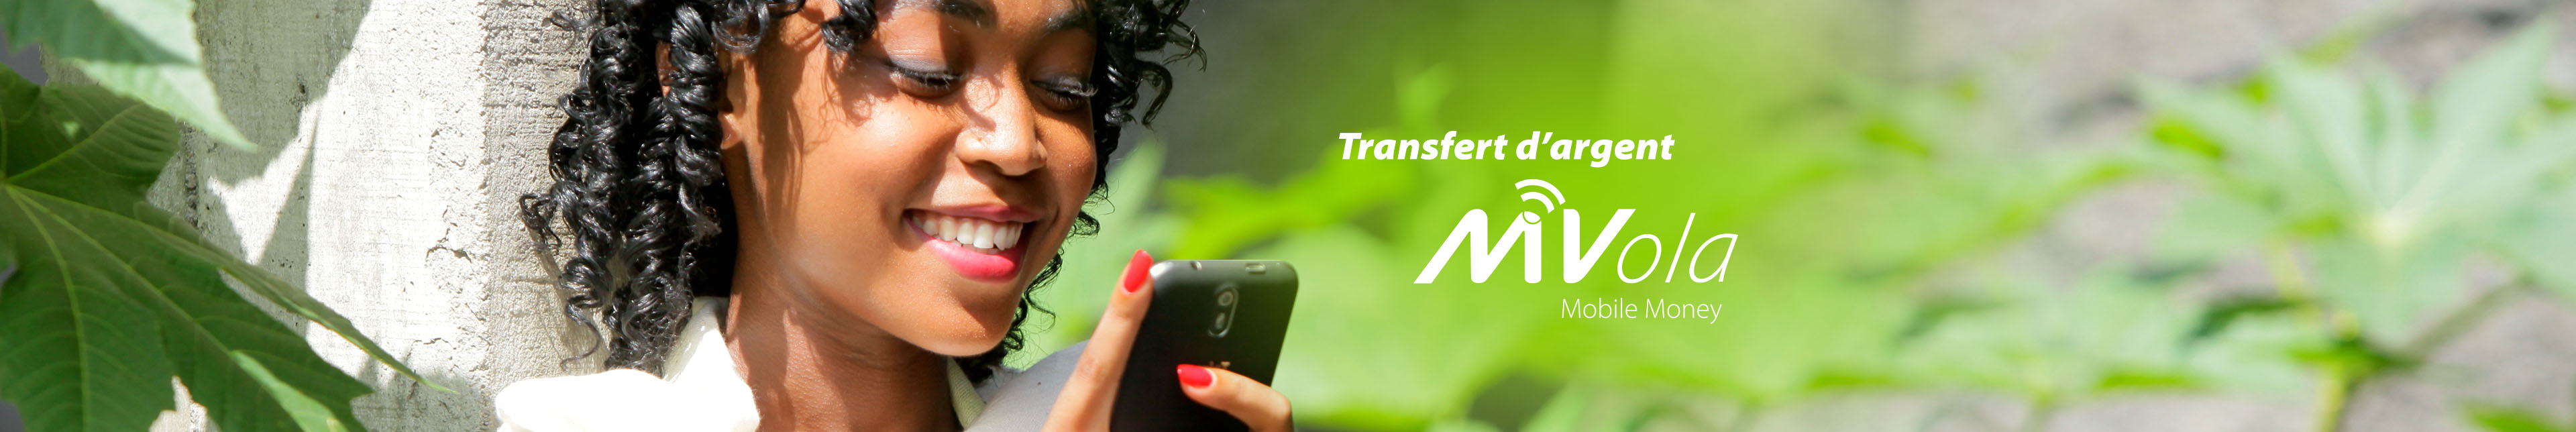 MVola - Transfert d'argent